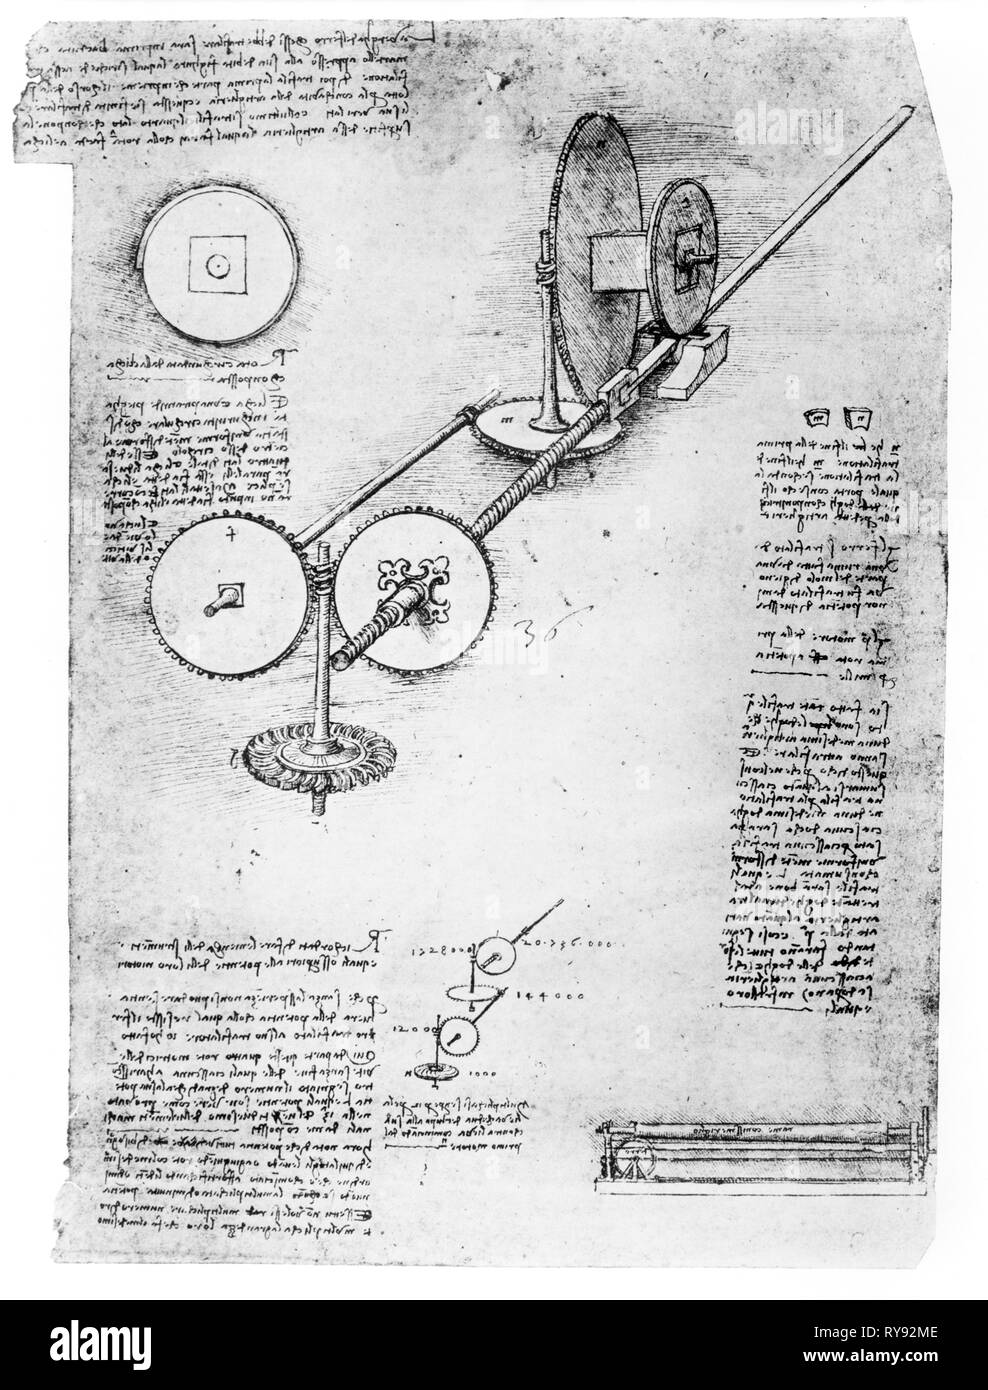 Aile avec vitesses mécaniques, techniques et dessins mécaniques d'un ordinateur portable, Leonardo da Vinci (1452-1519) Banque D'Images